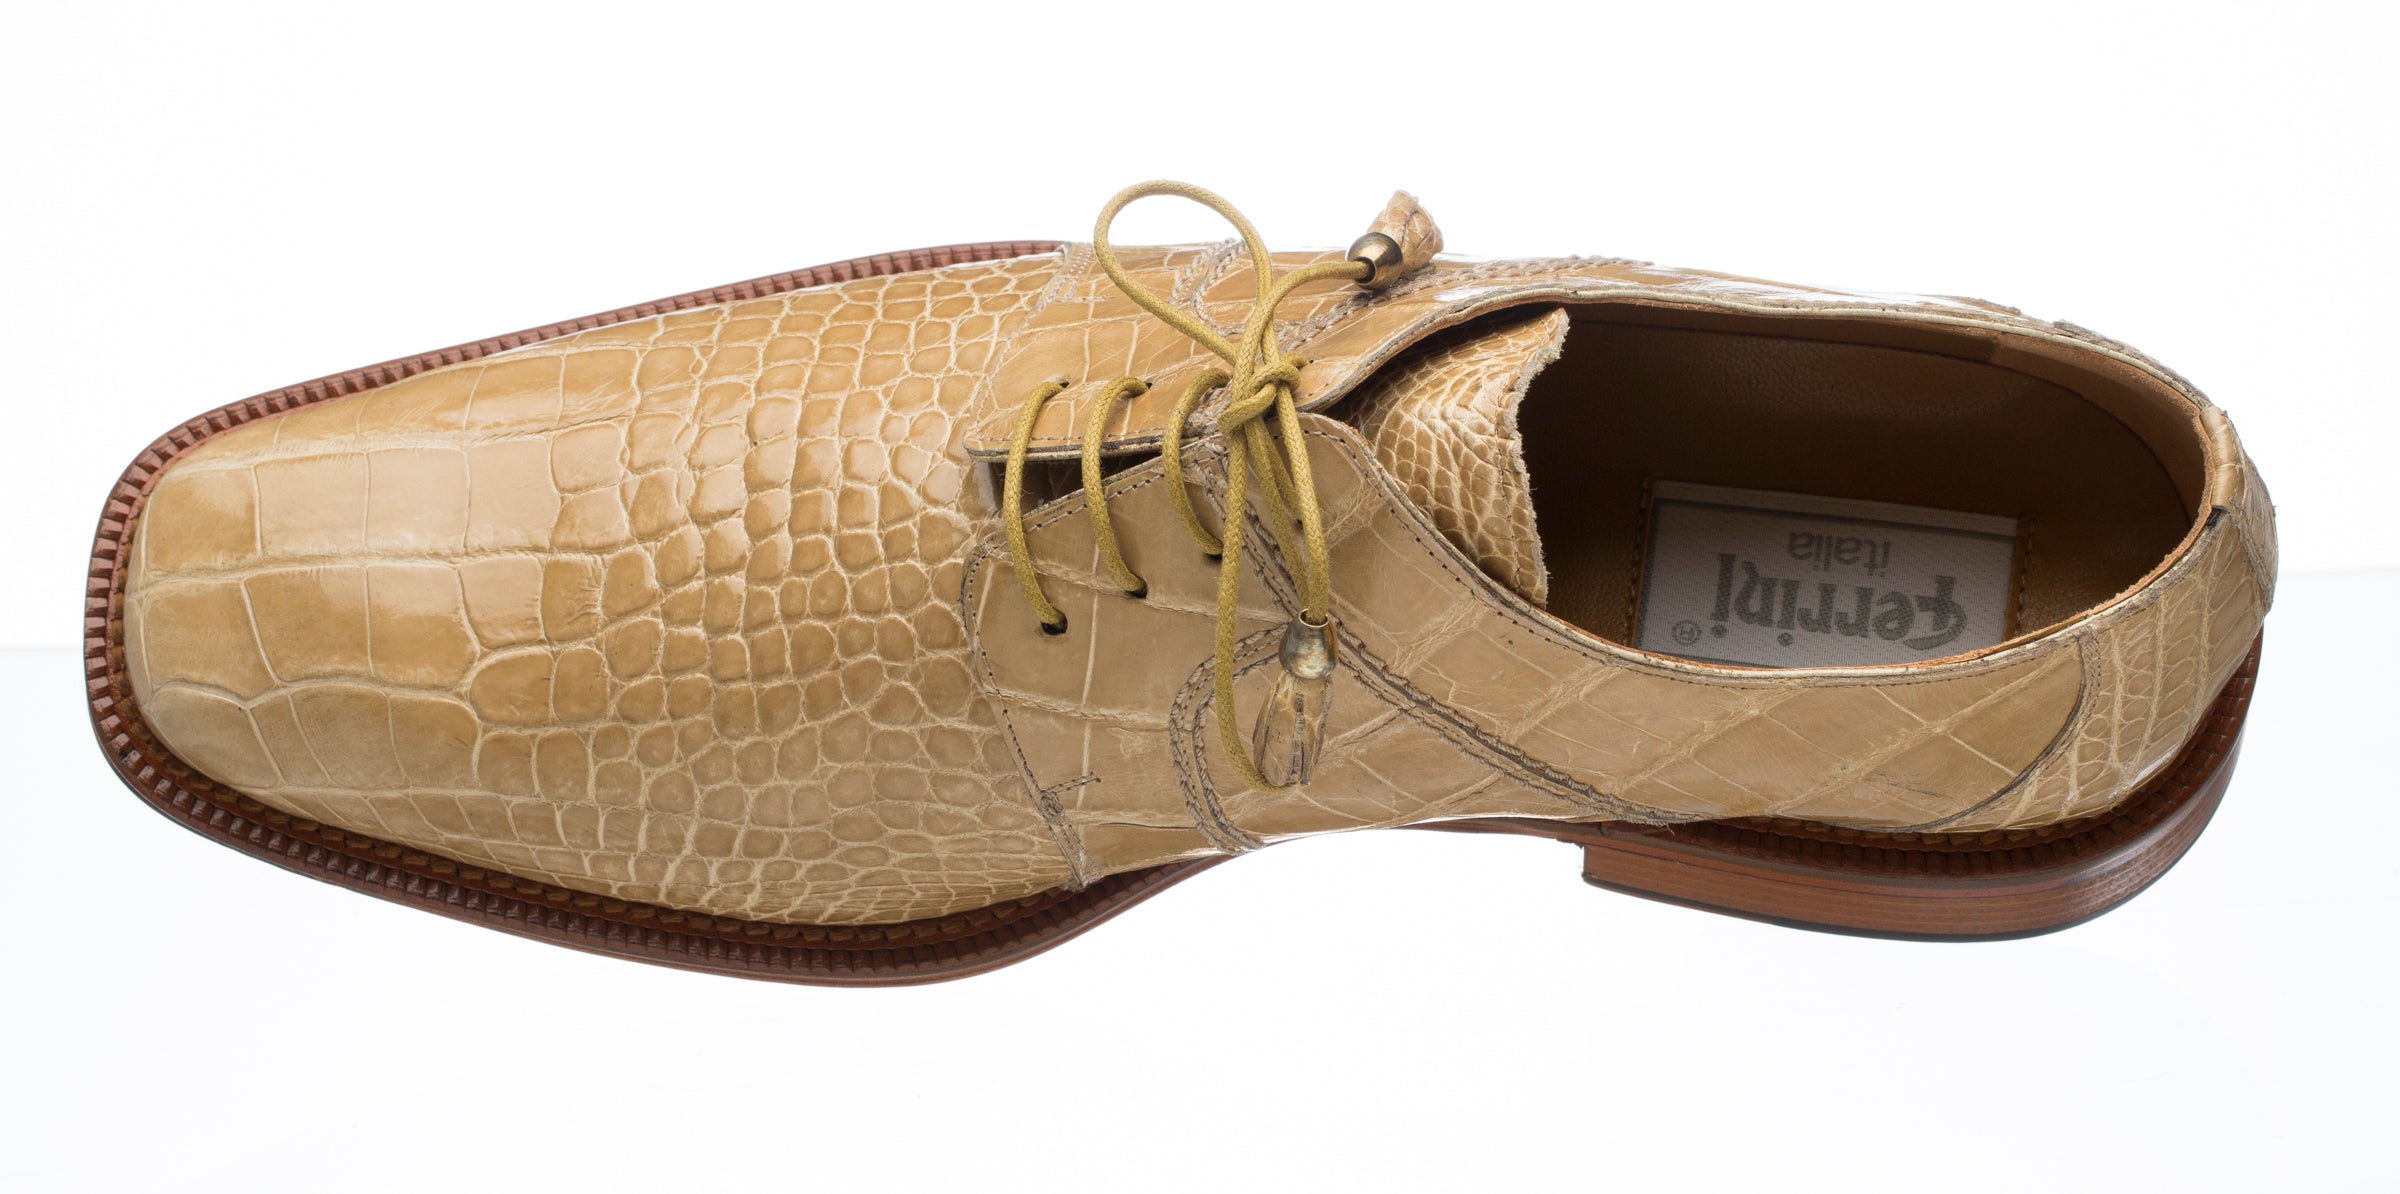 Ferrini USA Belly Alligator 205 Men's Dress Shoes